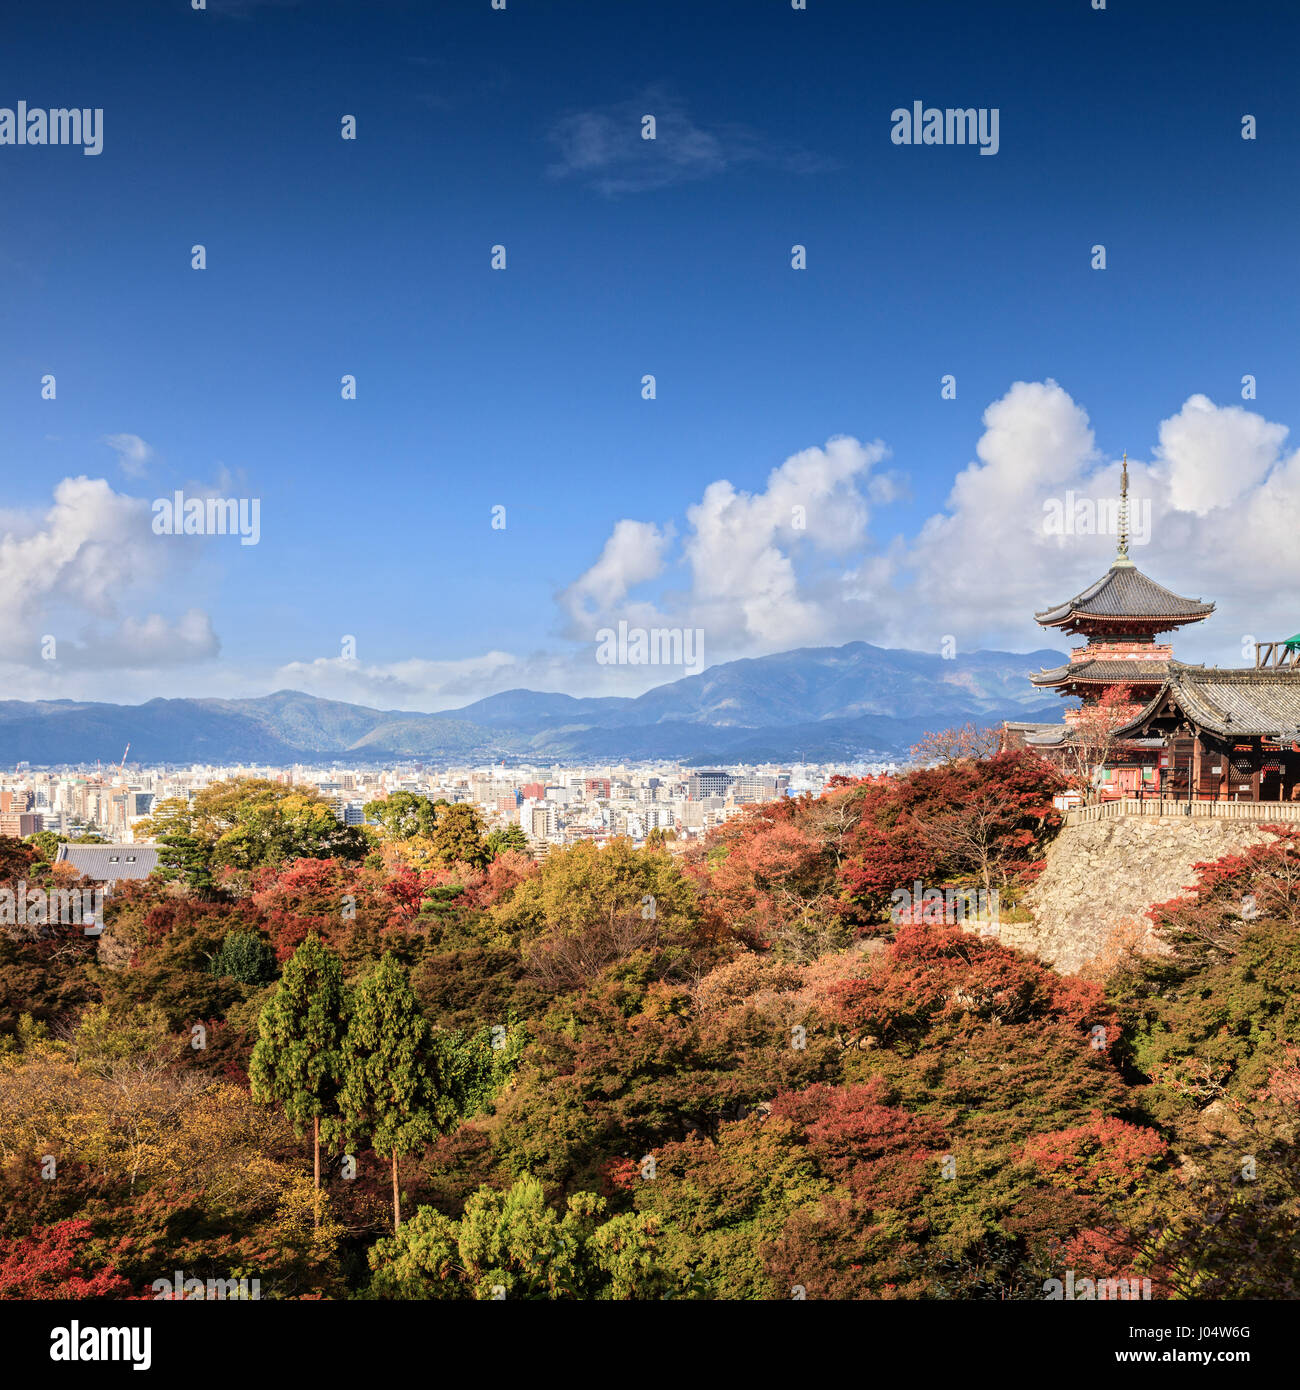 El Protocolo de Kyoto, el templo Kiyomizu-dera, Japón - El templo más visitado en Kyoto, Japón, es Kiyomizu-dera y sus jardines de colores del otoño, con la ciudad o Foto de stock